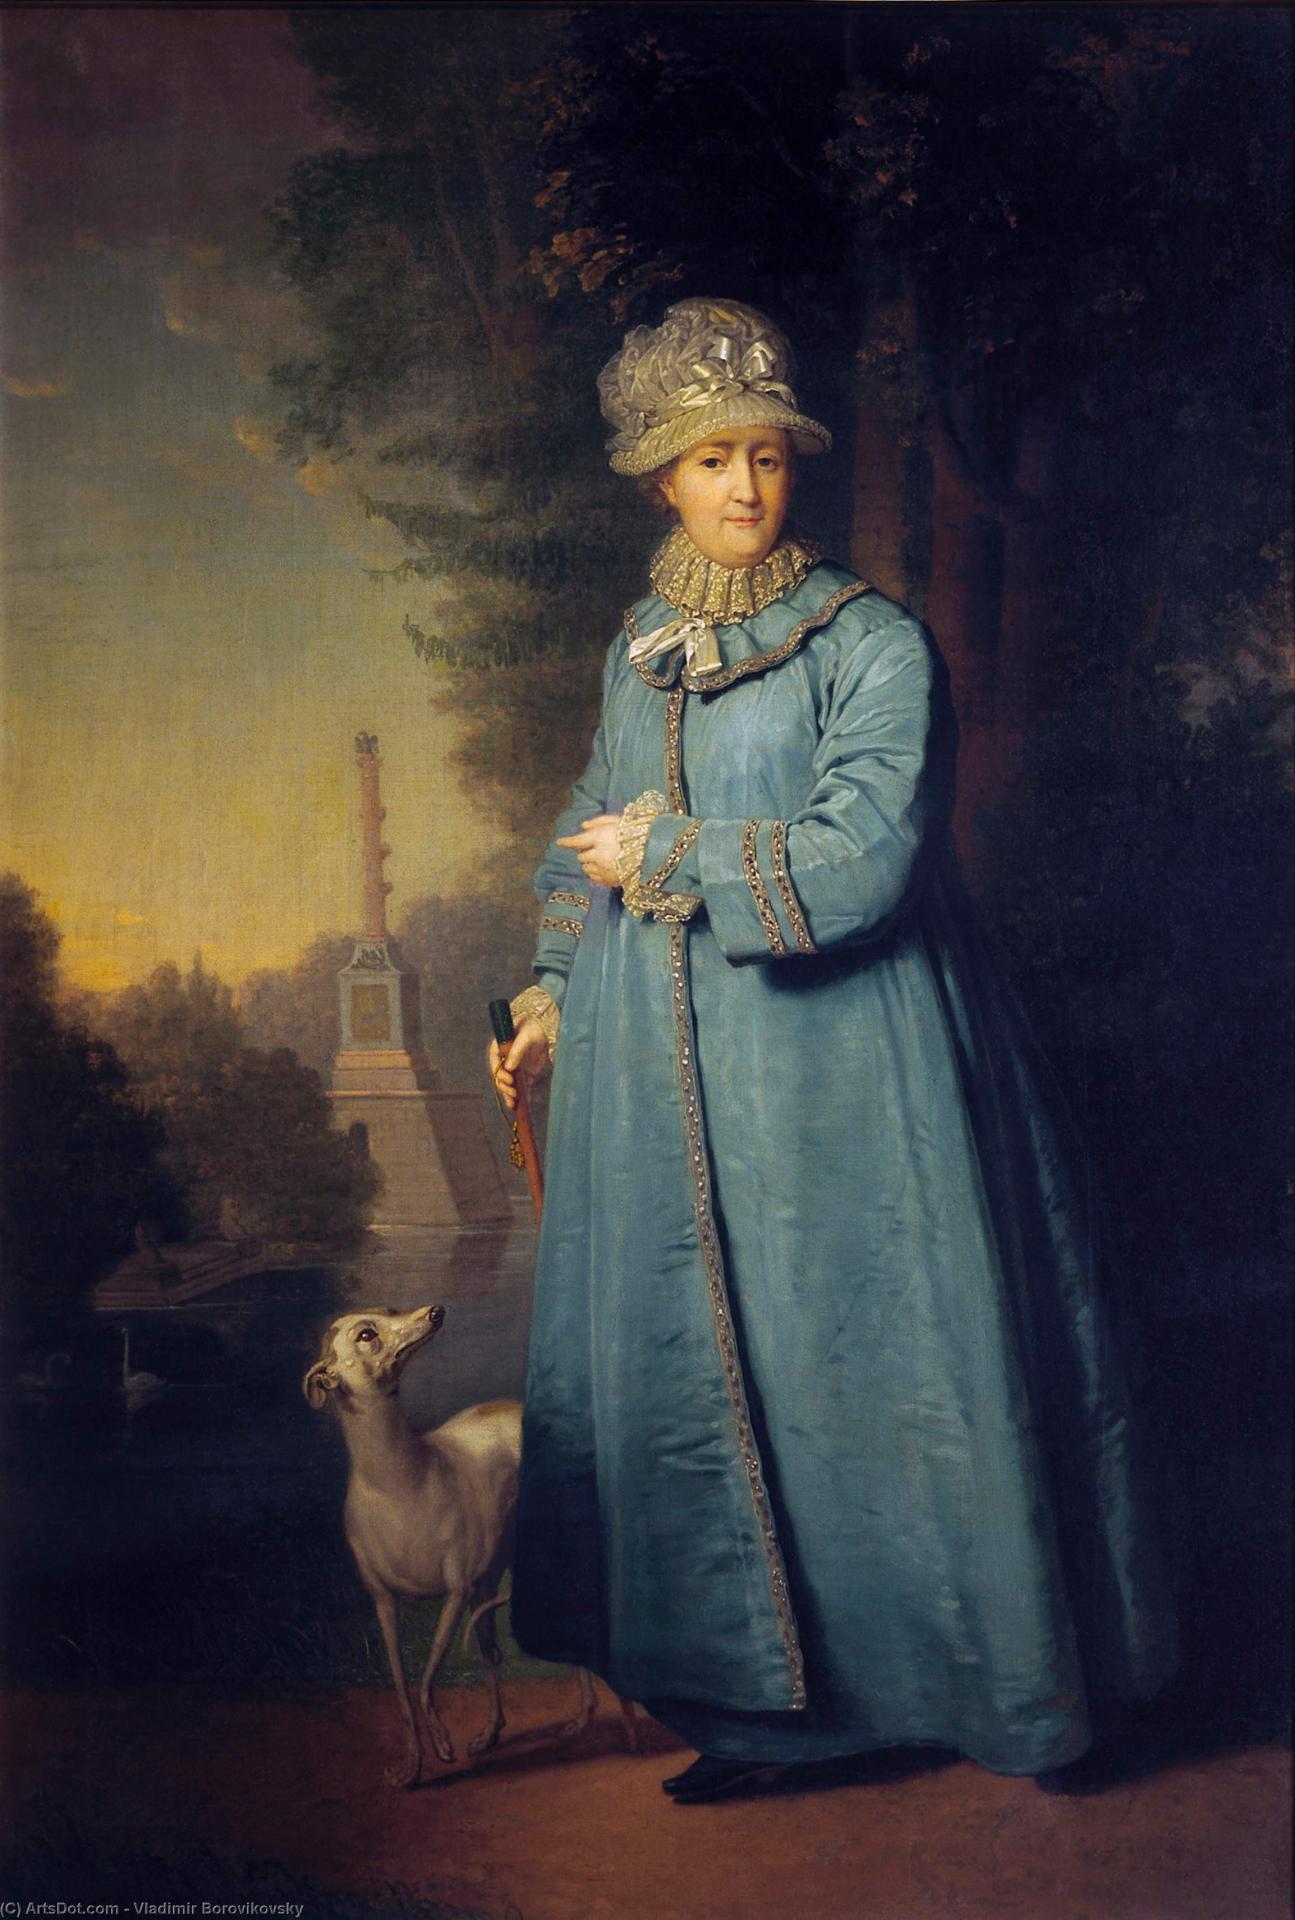 Vladimir borovikovsky portrait of catherine ii empress of russia